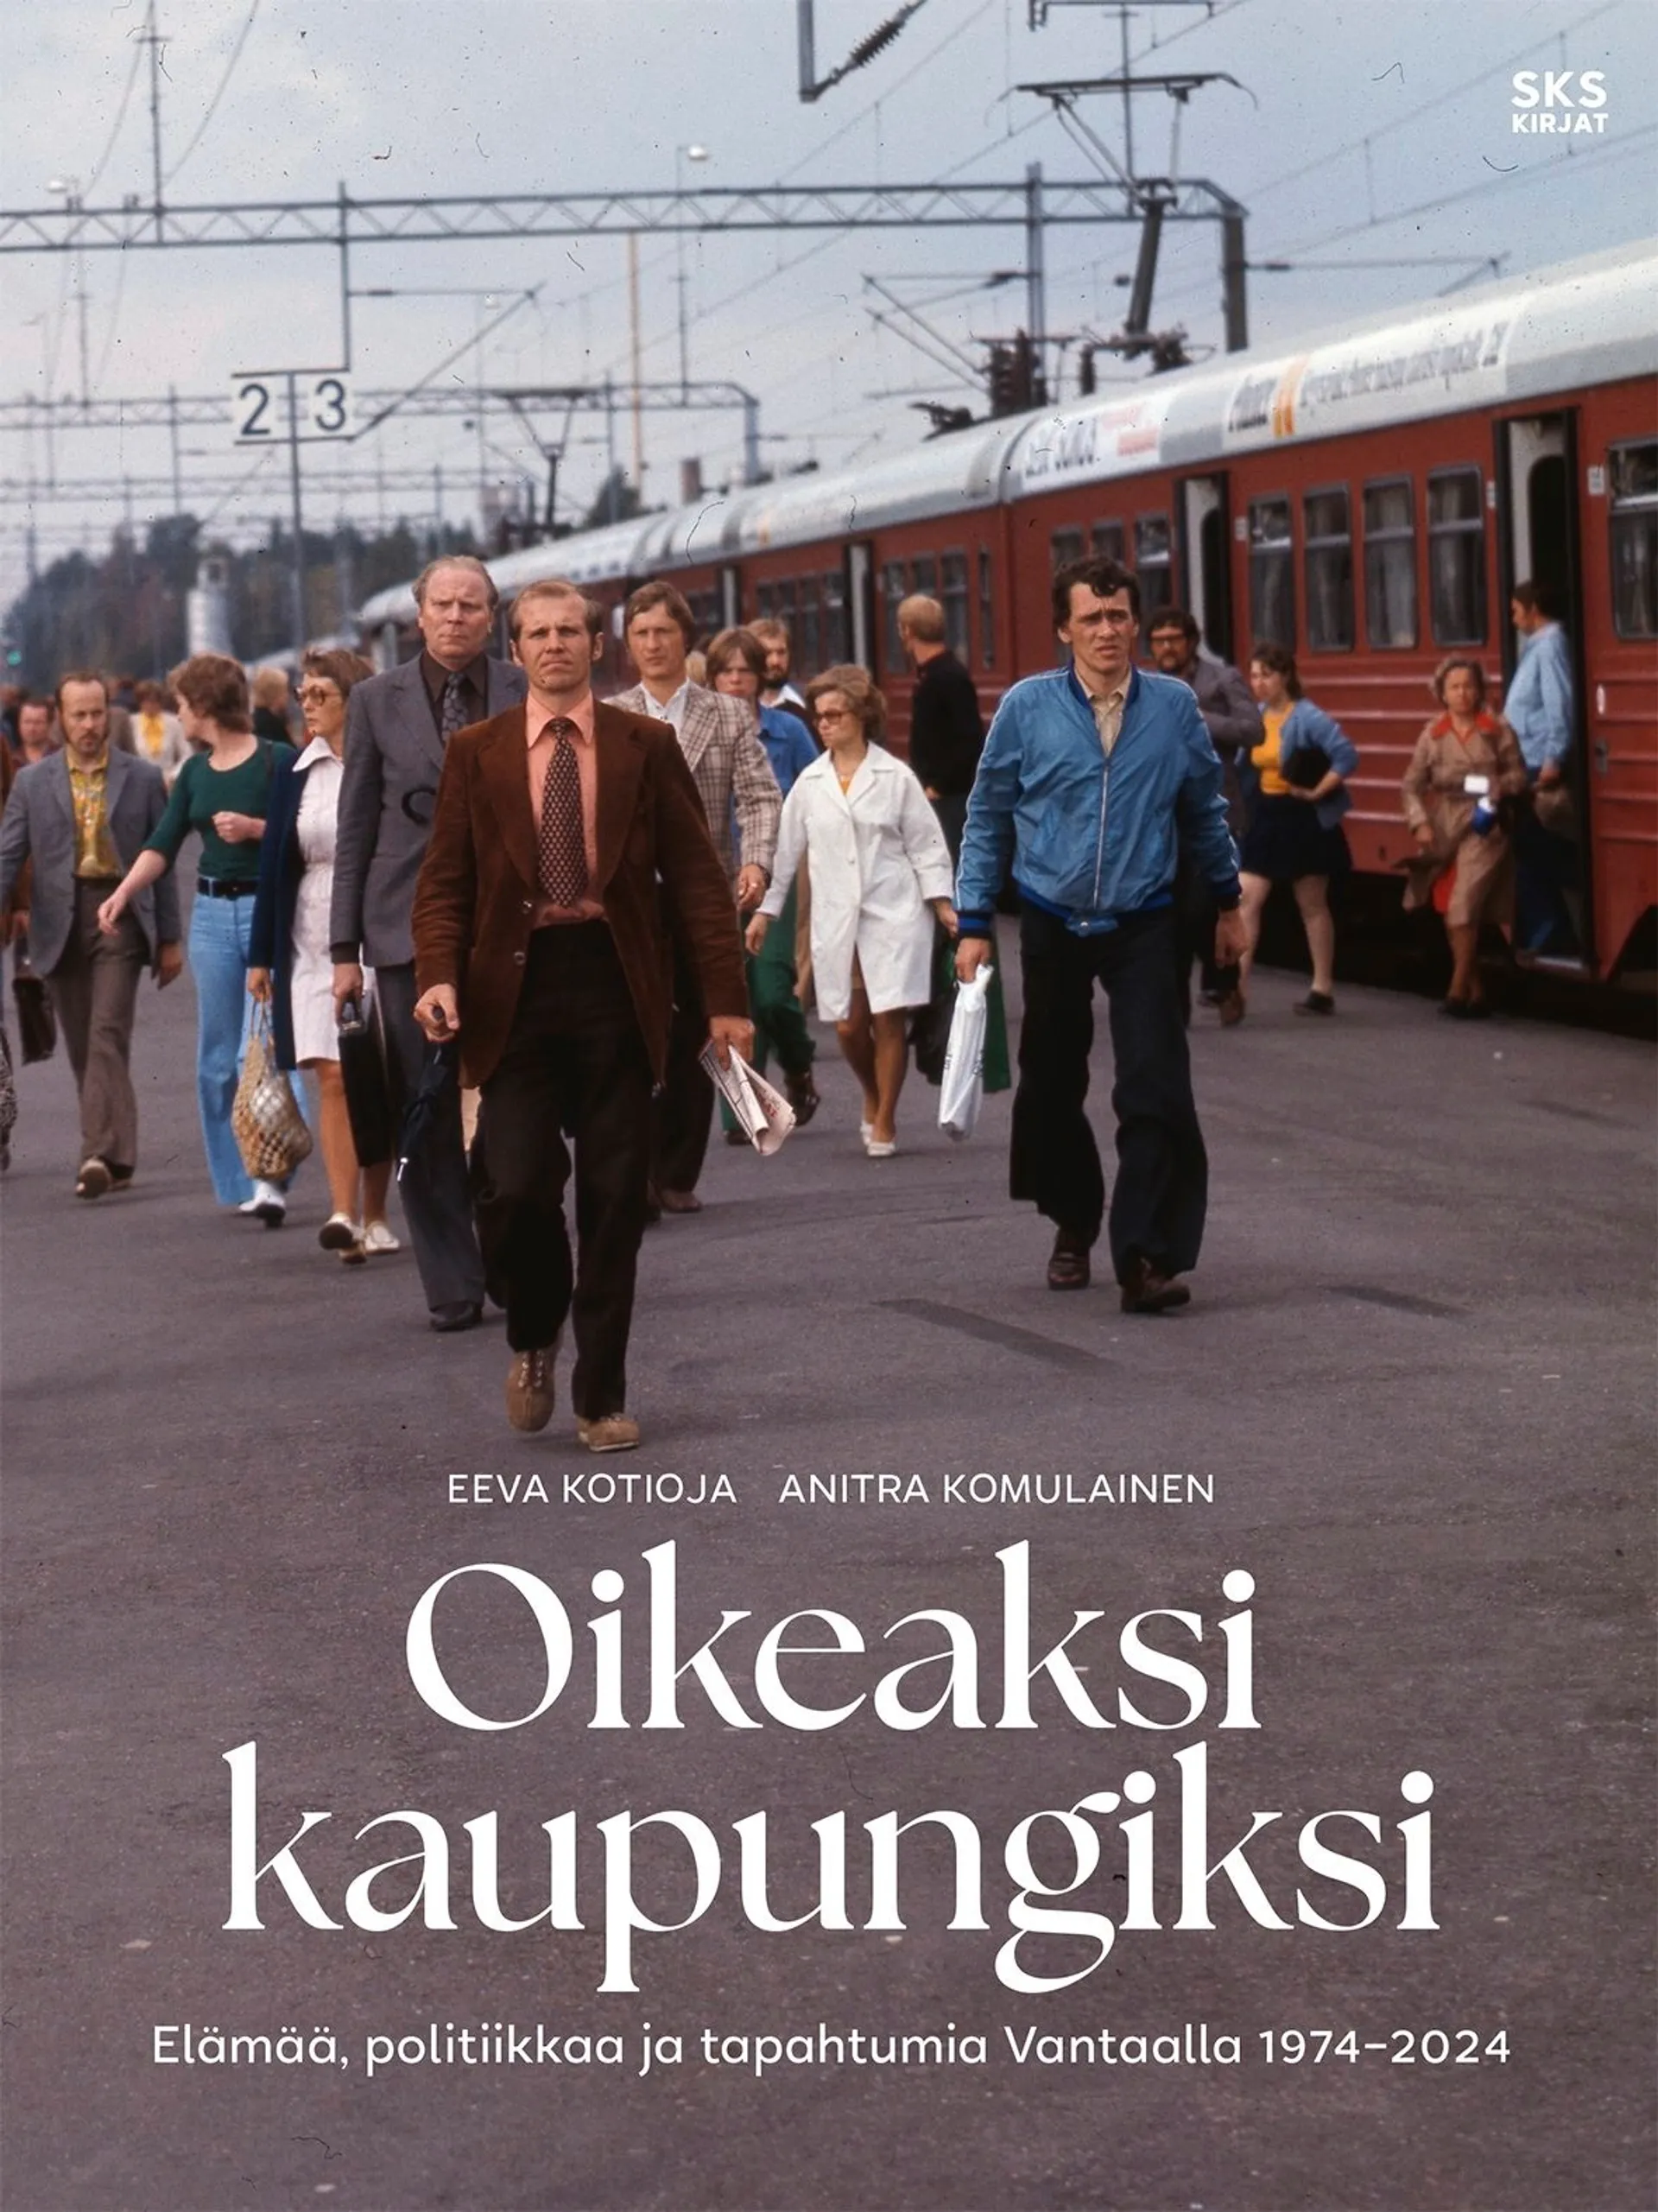 Kotioja, Oikeaksi kaupungiksi - Elämää, politiikkaa ja tapahtumia Vantaalla 1974–2024